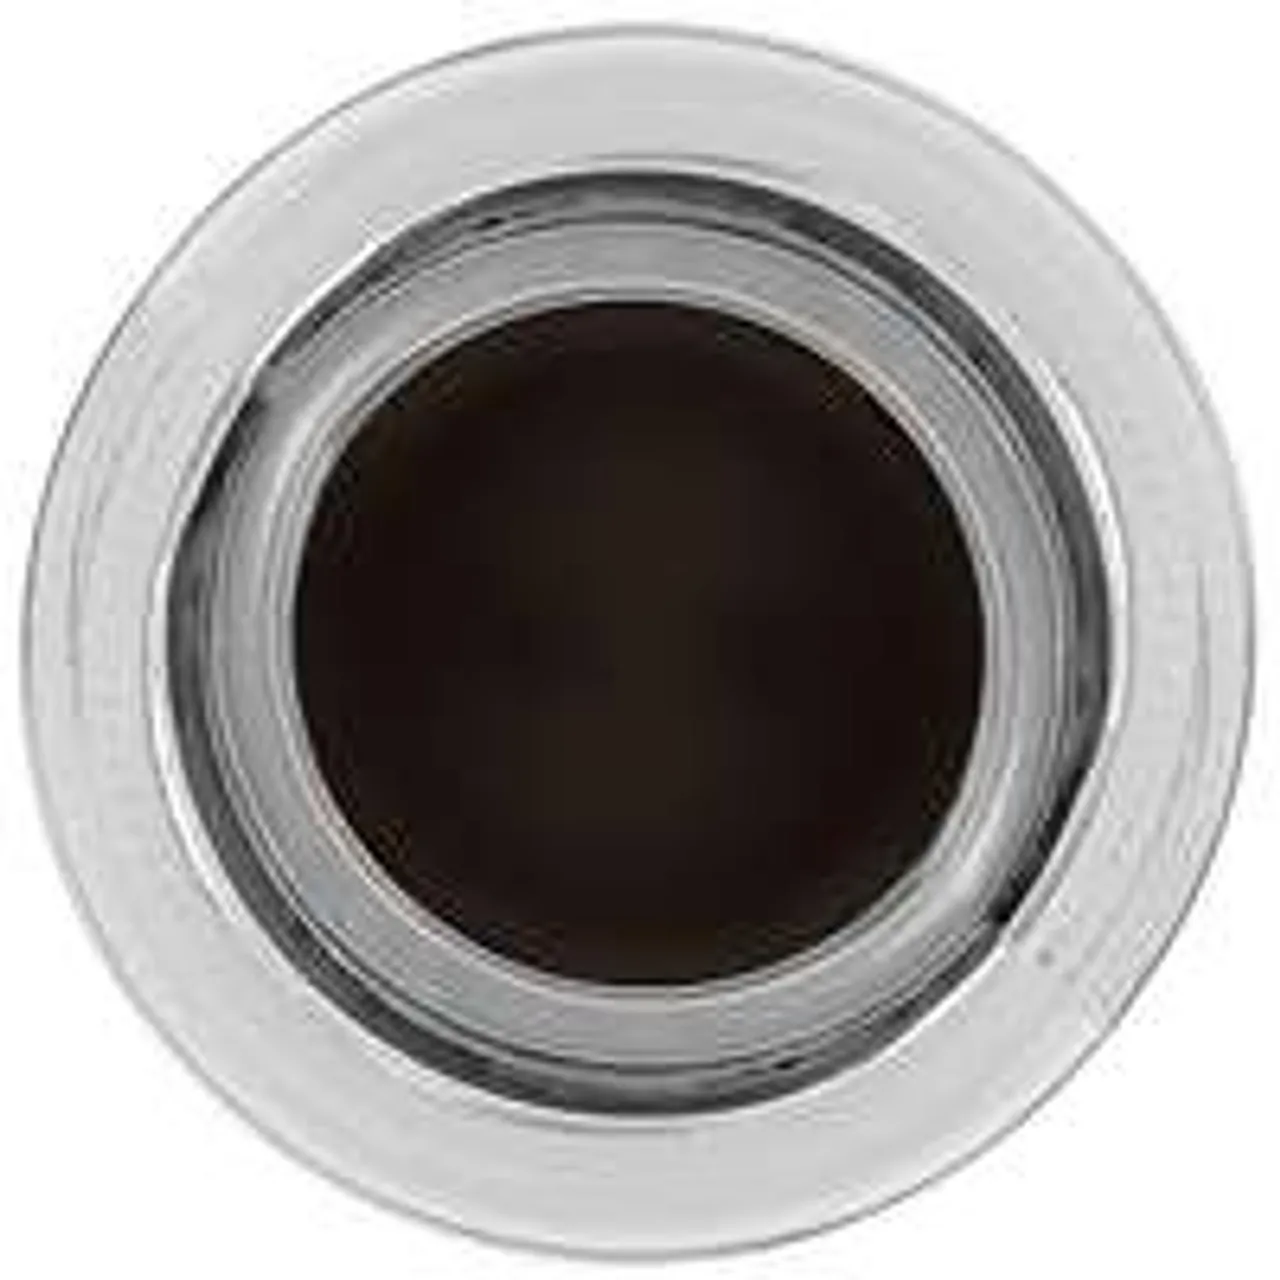 Bobbi Brown Long-Wear Gel Eyeliner 7 Espresso Ink 3g